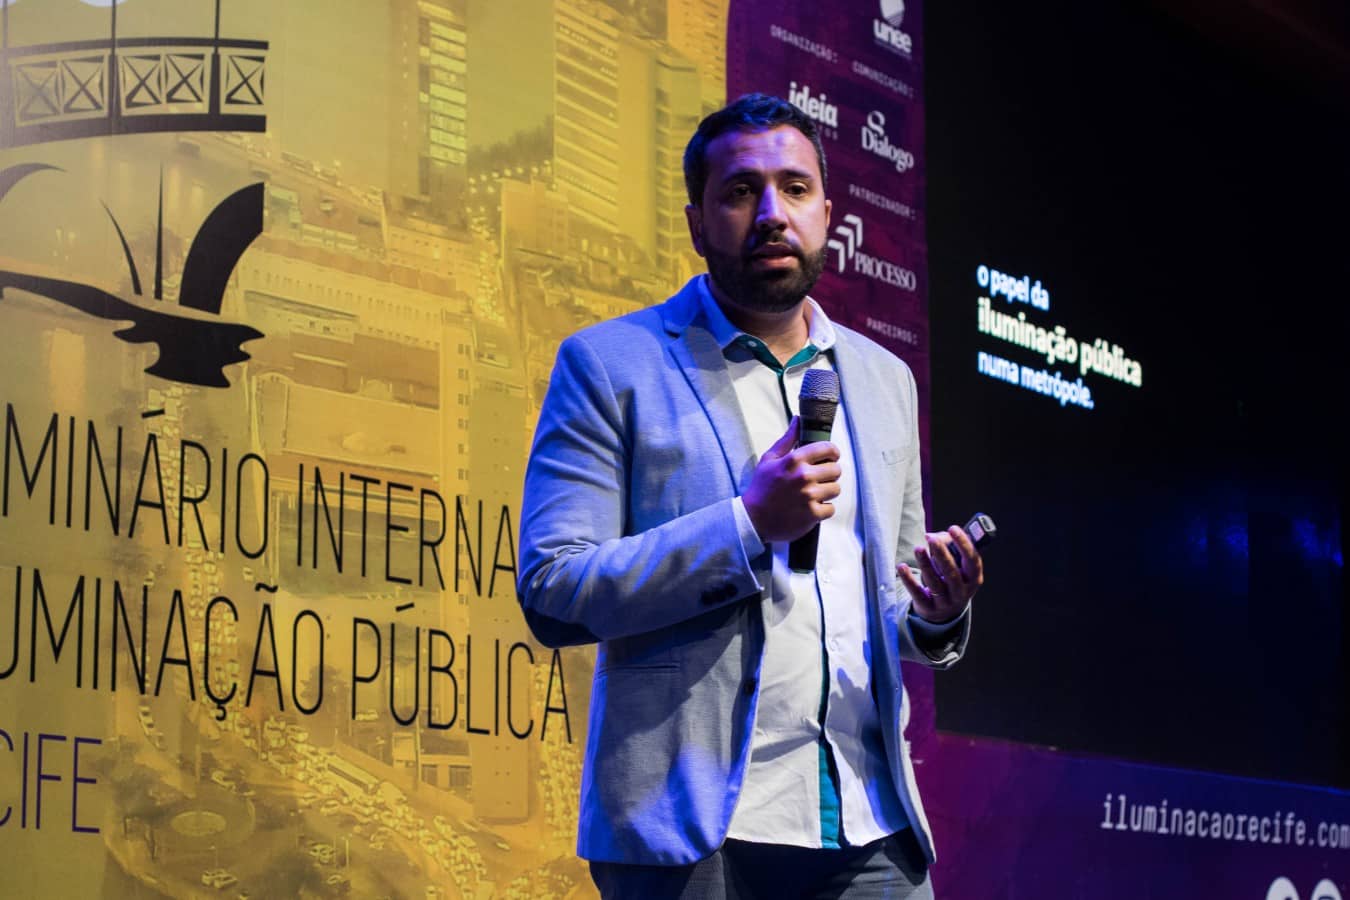 RAFAEL DO AMARAL TENÓRIO - Evento internacional no Recife discute iluminação pública